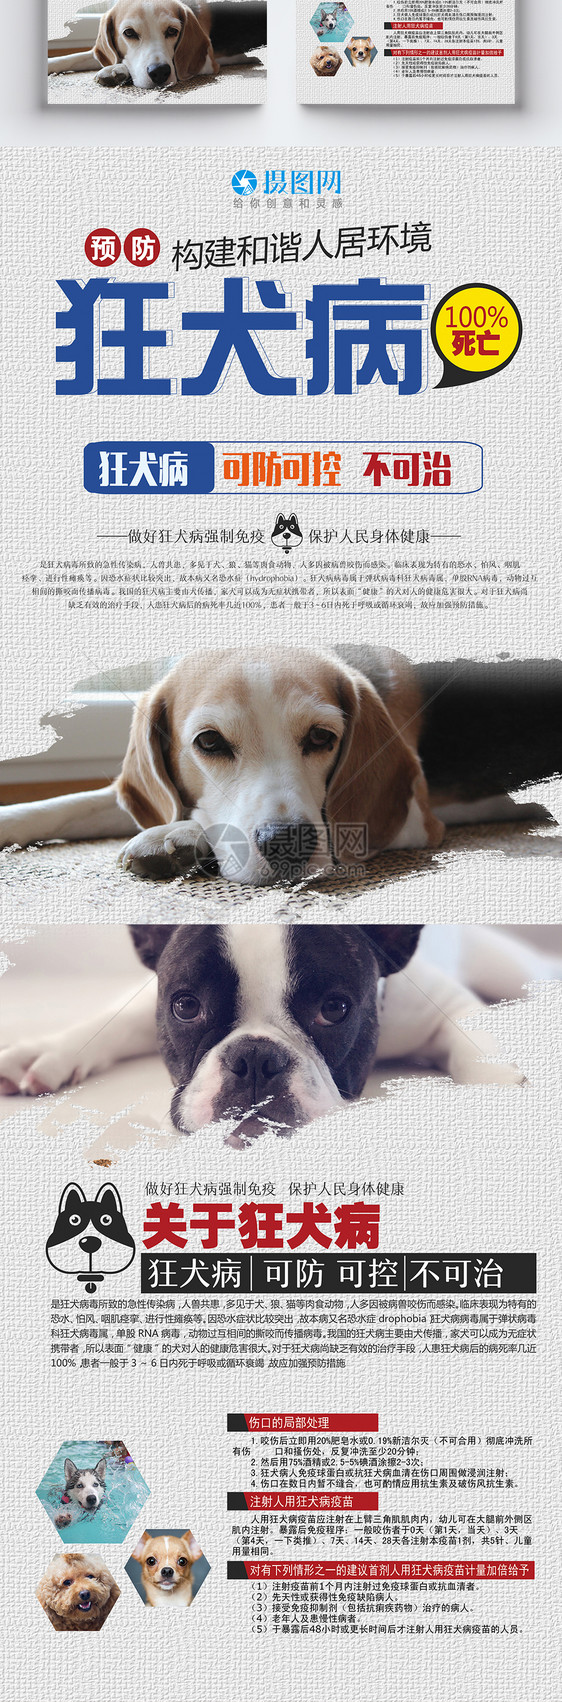 预防狂犬病宣传单图片